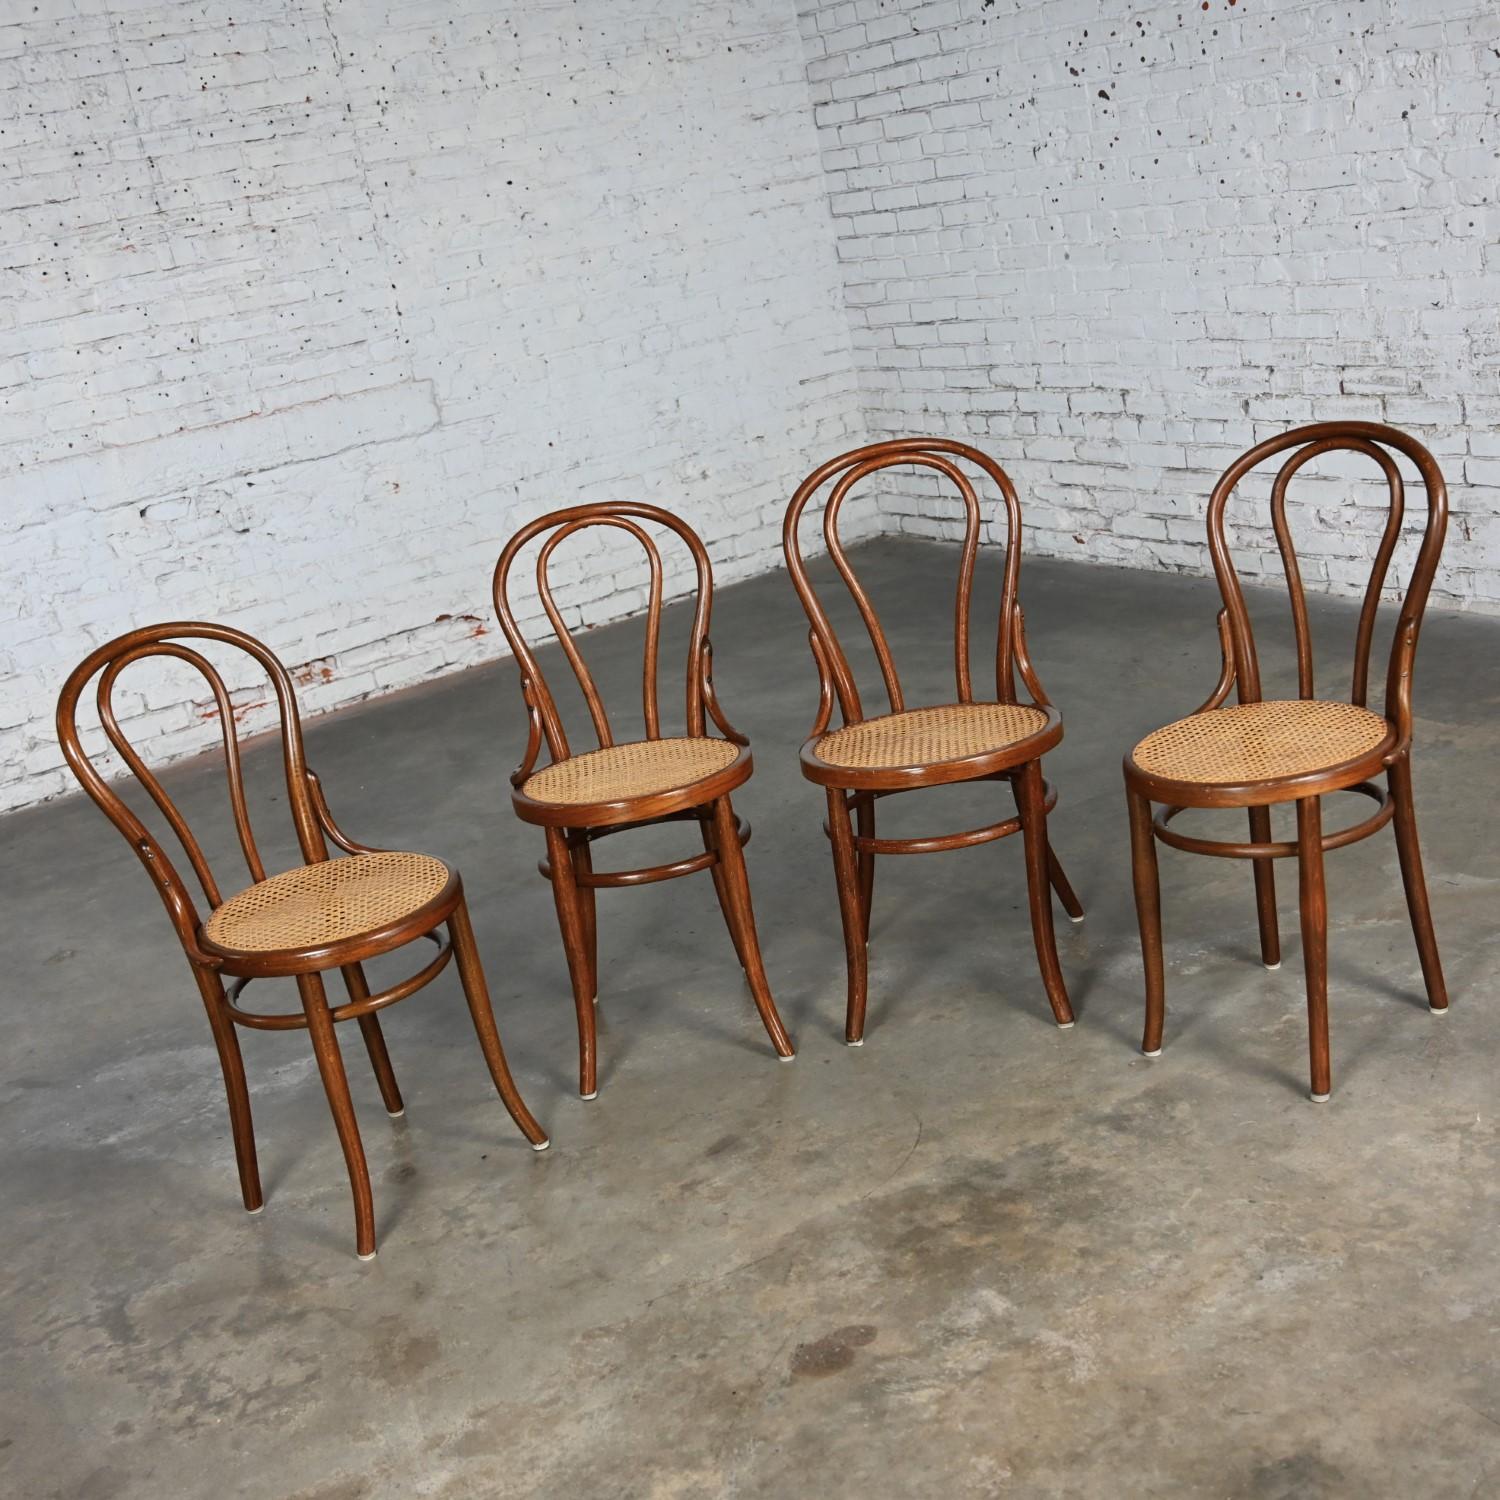 Chêne Ensemble de 4 chaises de café #18 de style Bauhaus par Thonet Structure en bois breton et sièges cannés à la main